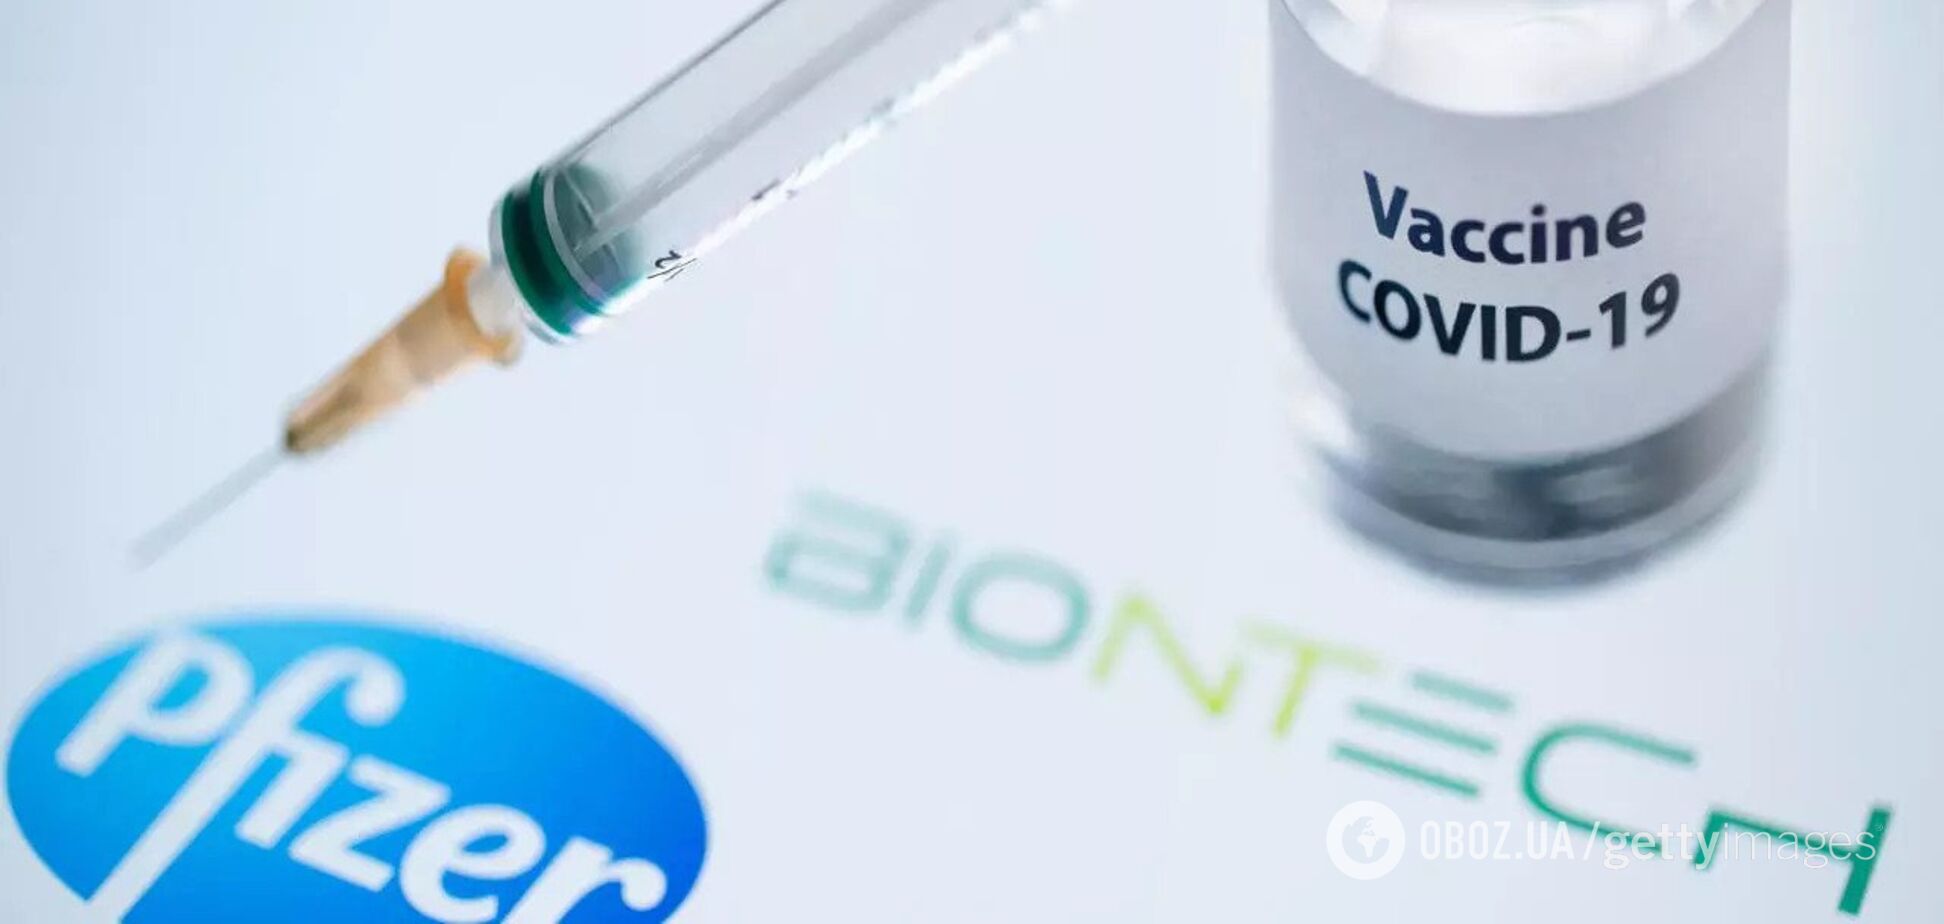 Ефективність вакцини Pfizer&BioNTech